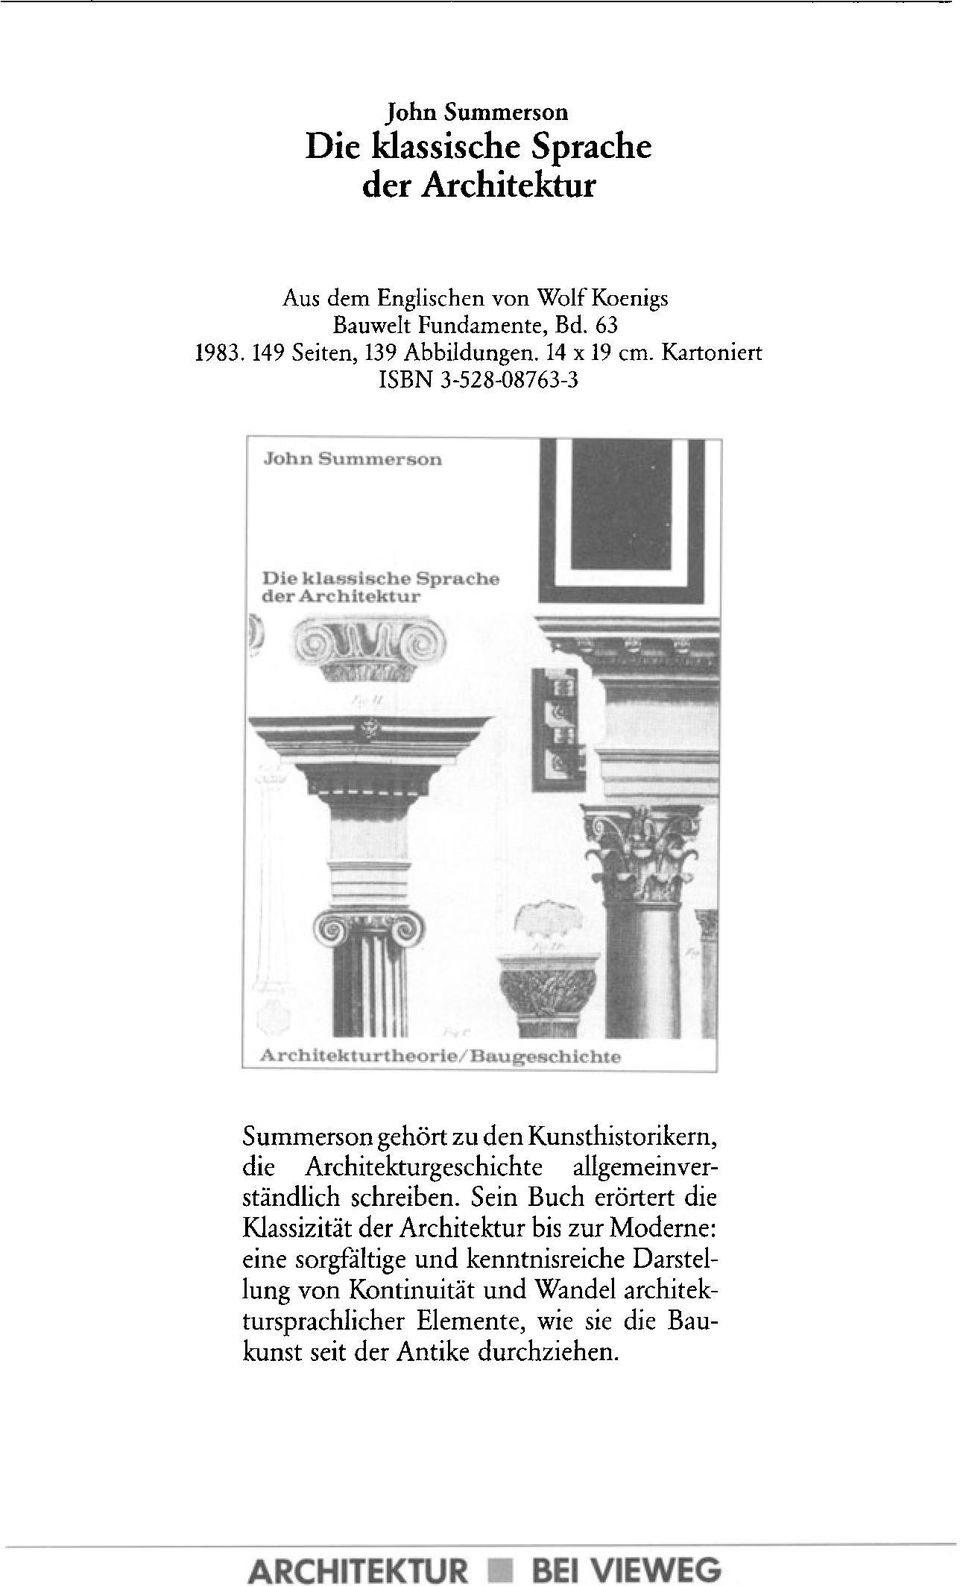 Kartoniert ISBN 3-528-08763-3 John Summerson Die klasslscbe Spracbe der Arcbltektur Summerson gehort zu den Kunsthistorikern, die